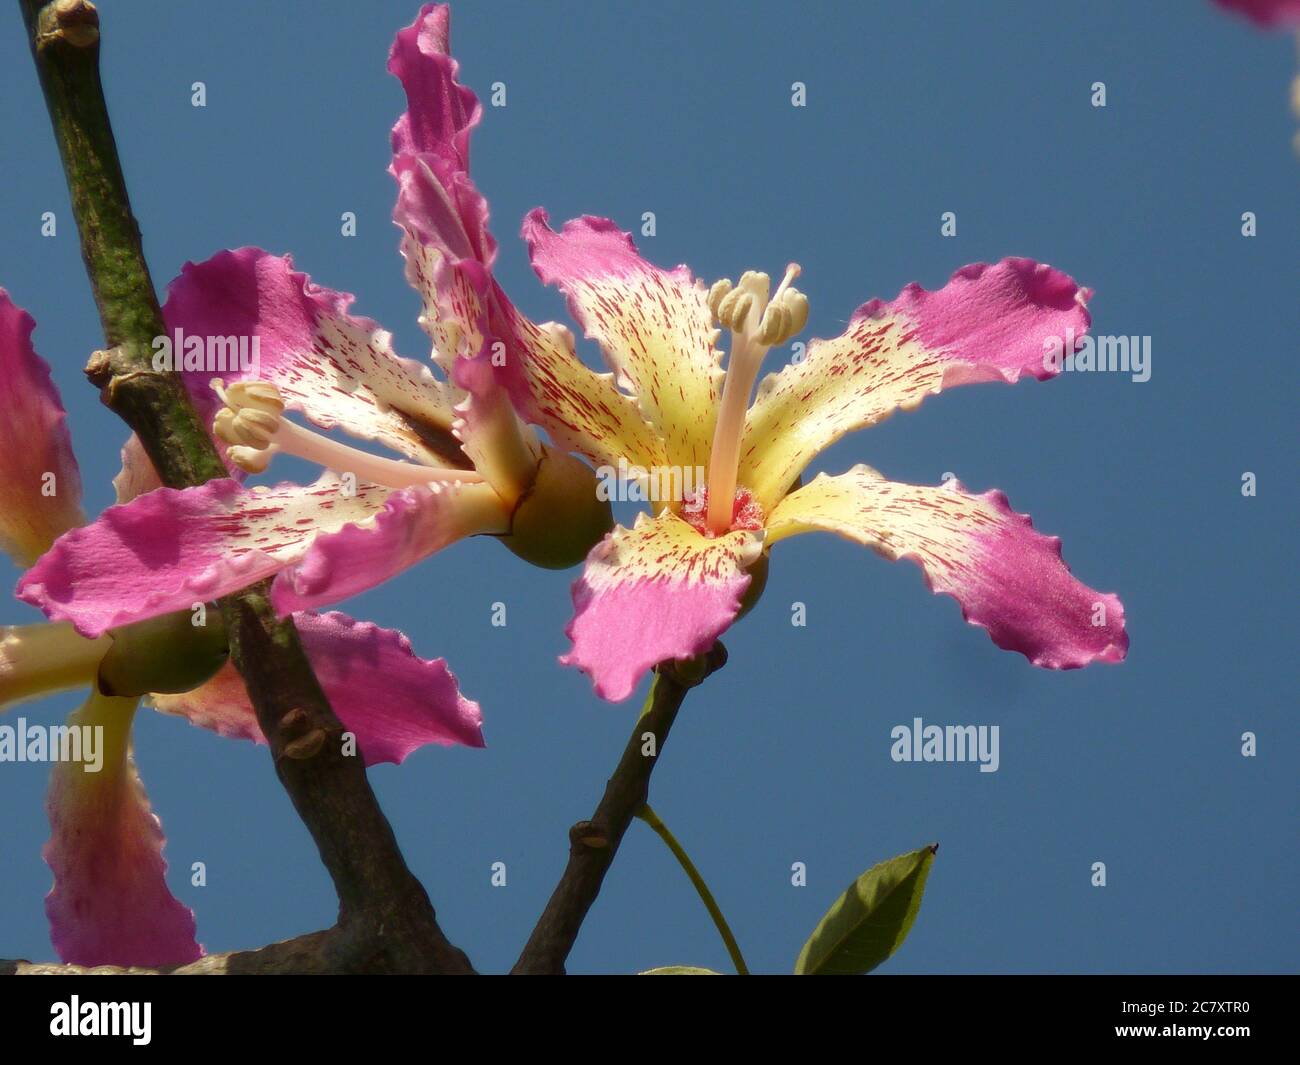 Nahaufnahme von Nadelblumen, die auf einer Seidenseide wachsen Baum Stockfoto